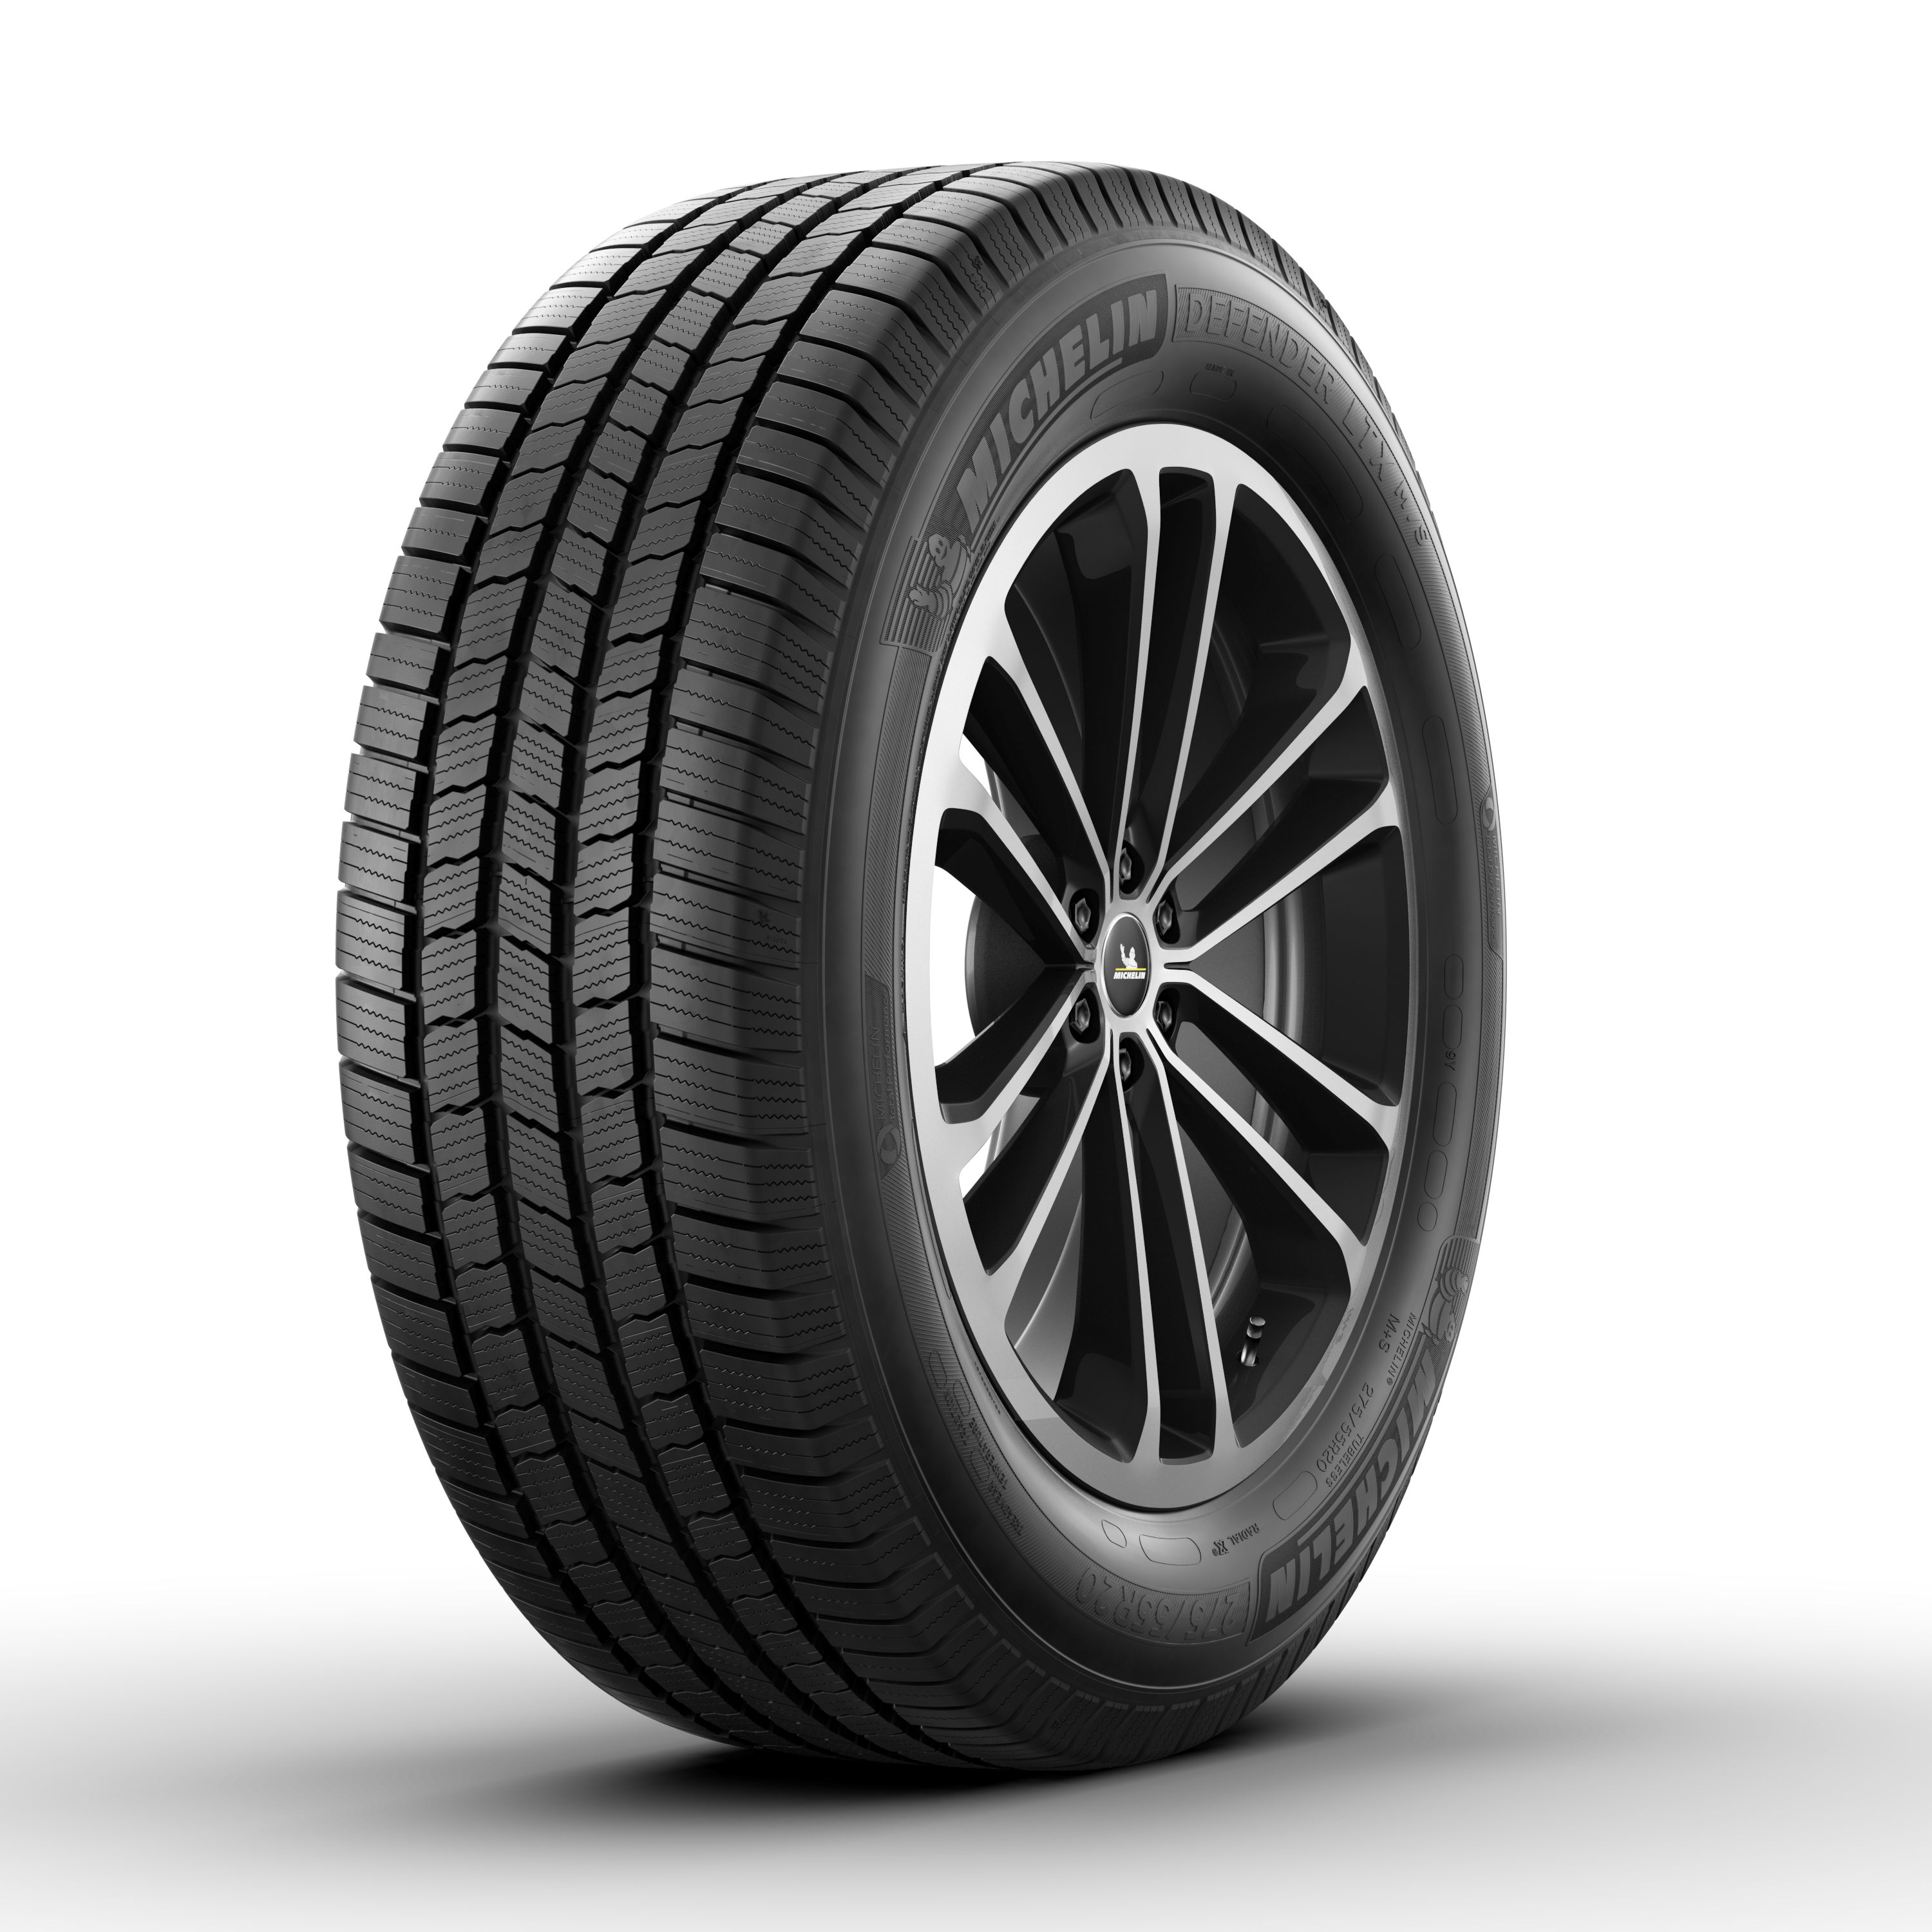 MICHELIN Defender LTX M/S - Car Tire | MICHELIN USA